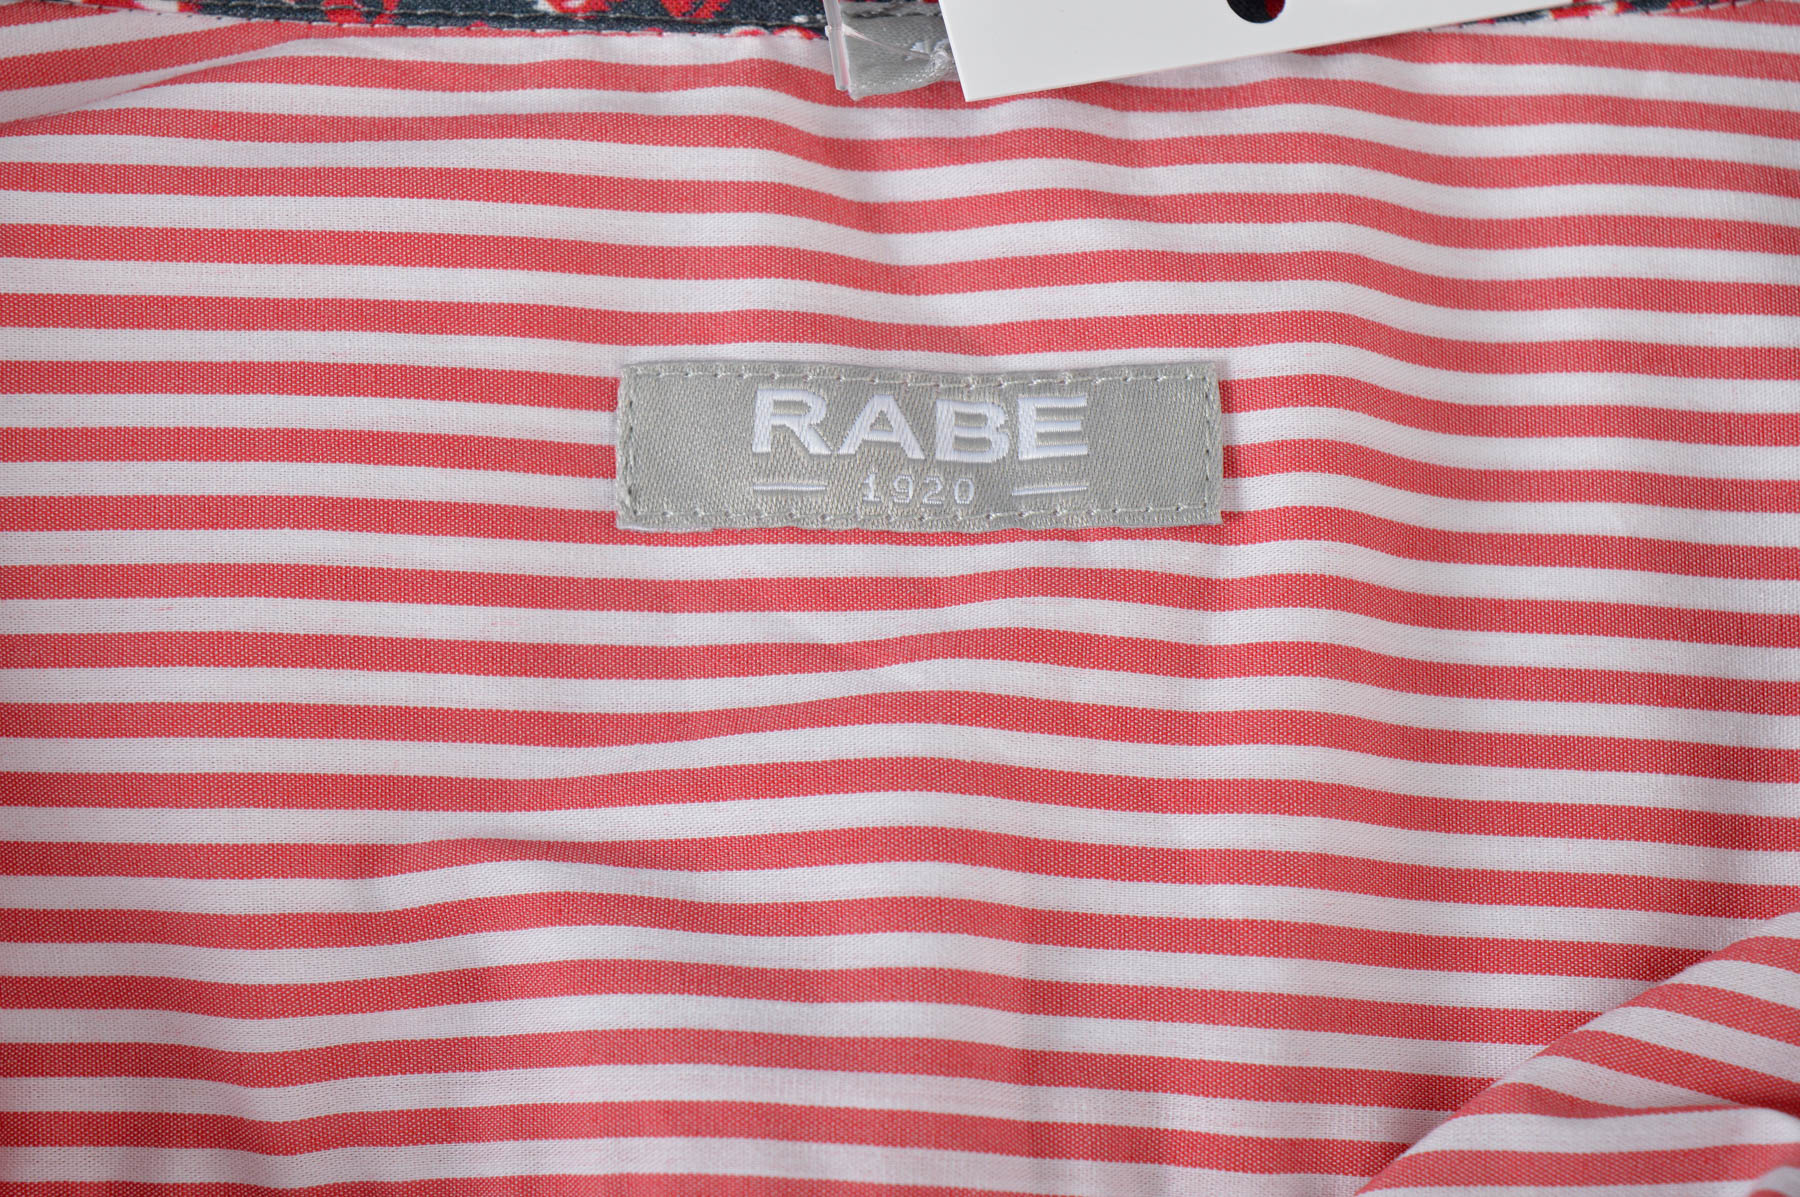 Дамска риза - Rabe - 2